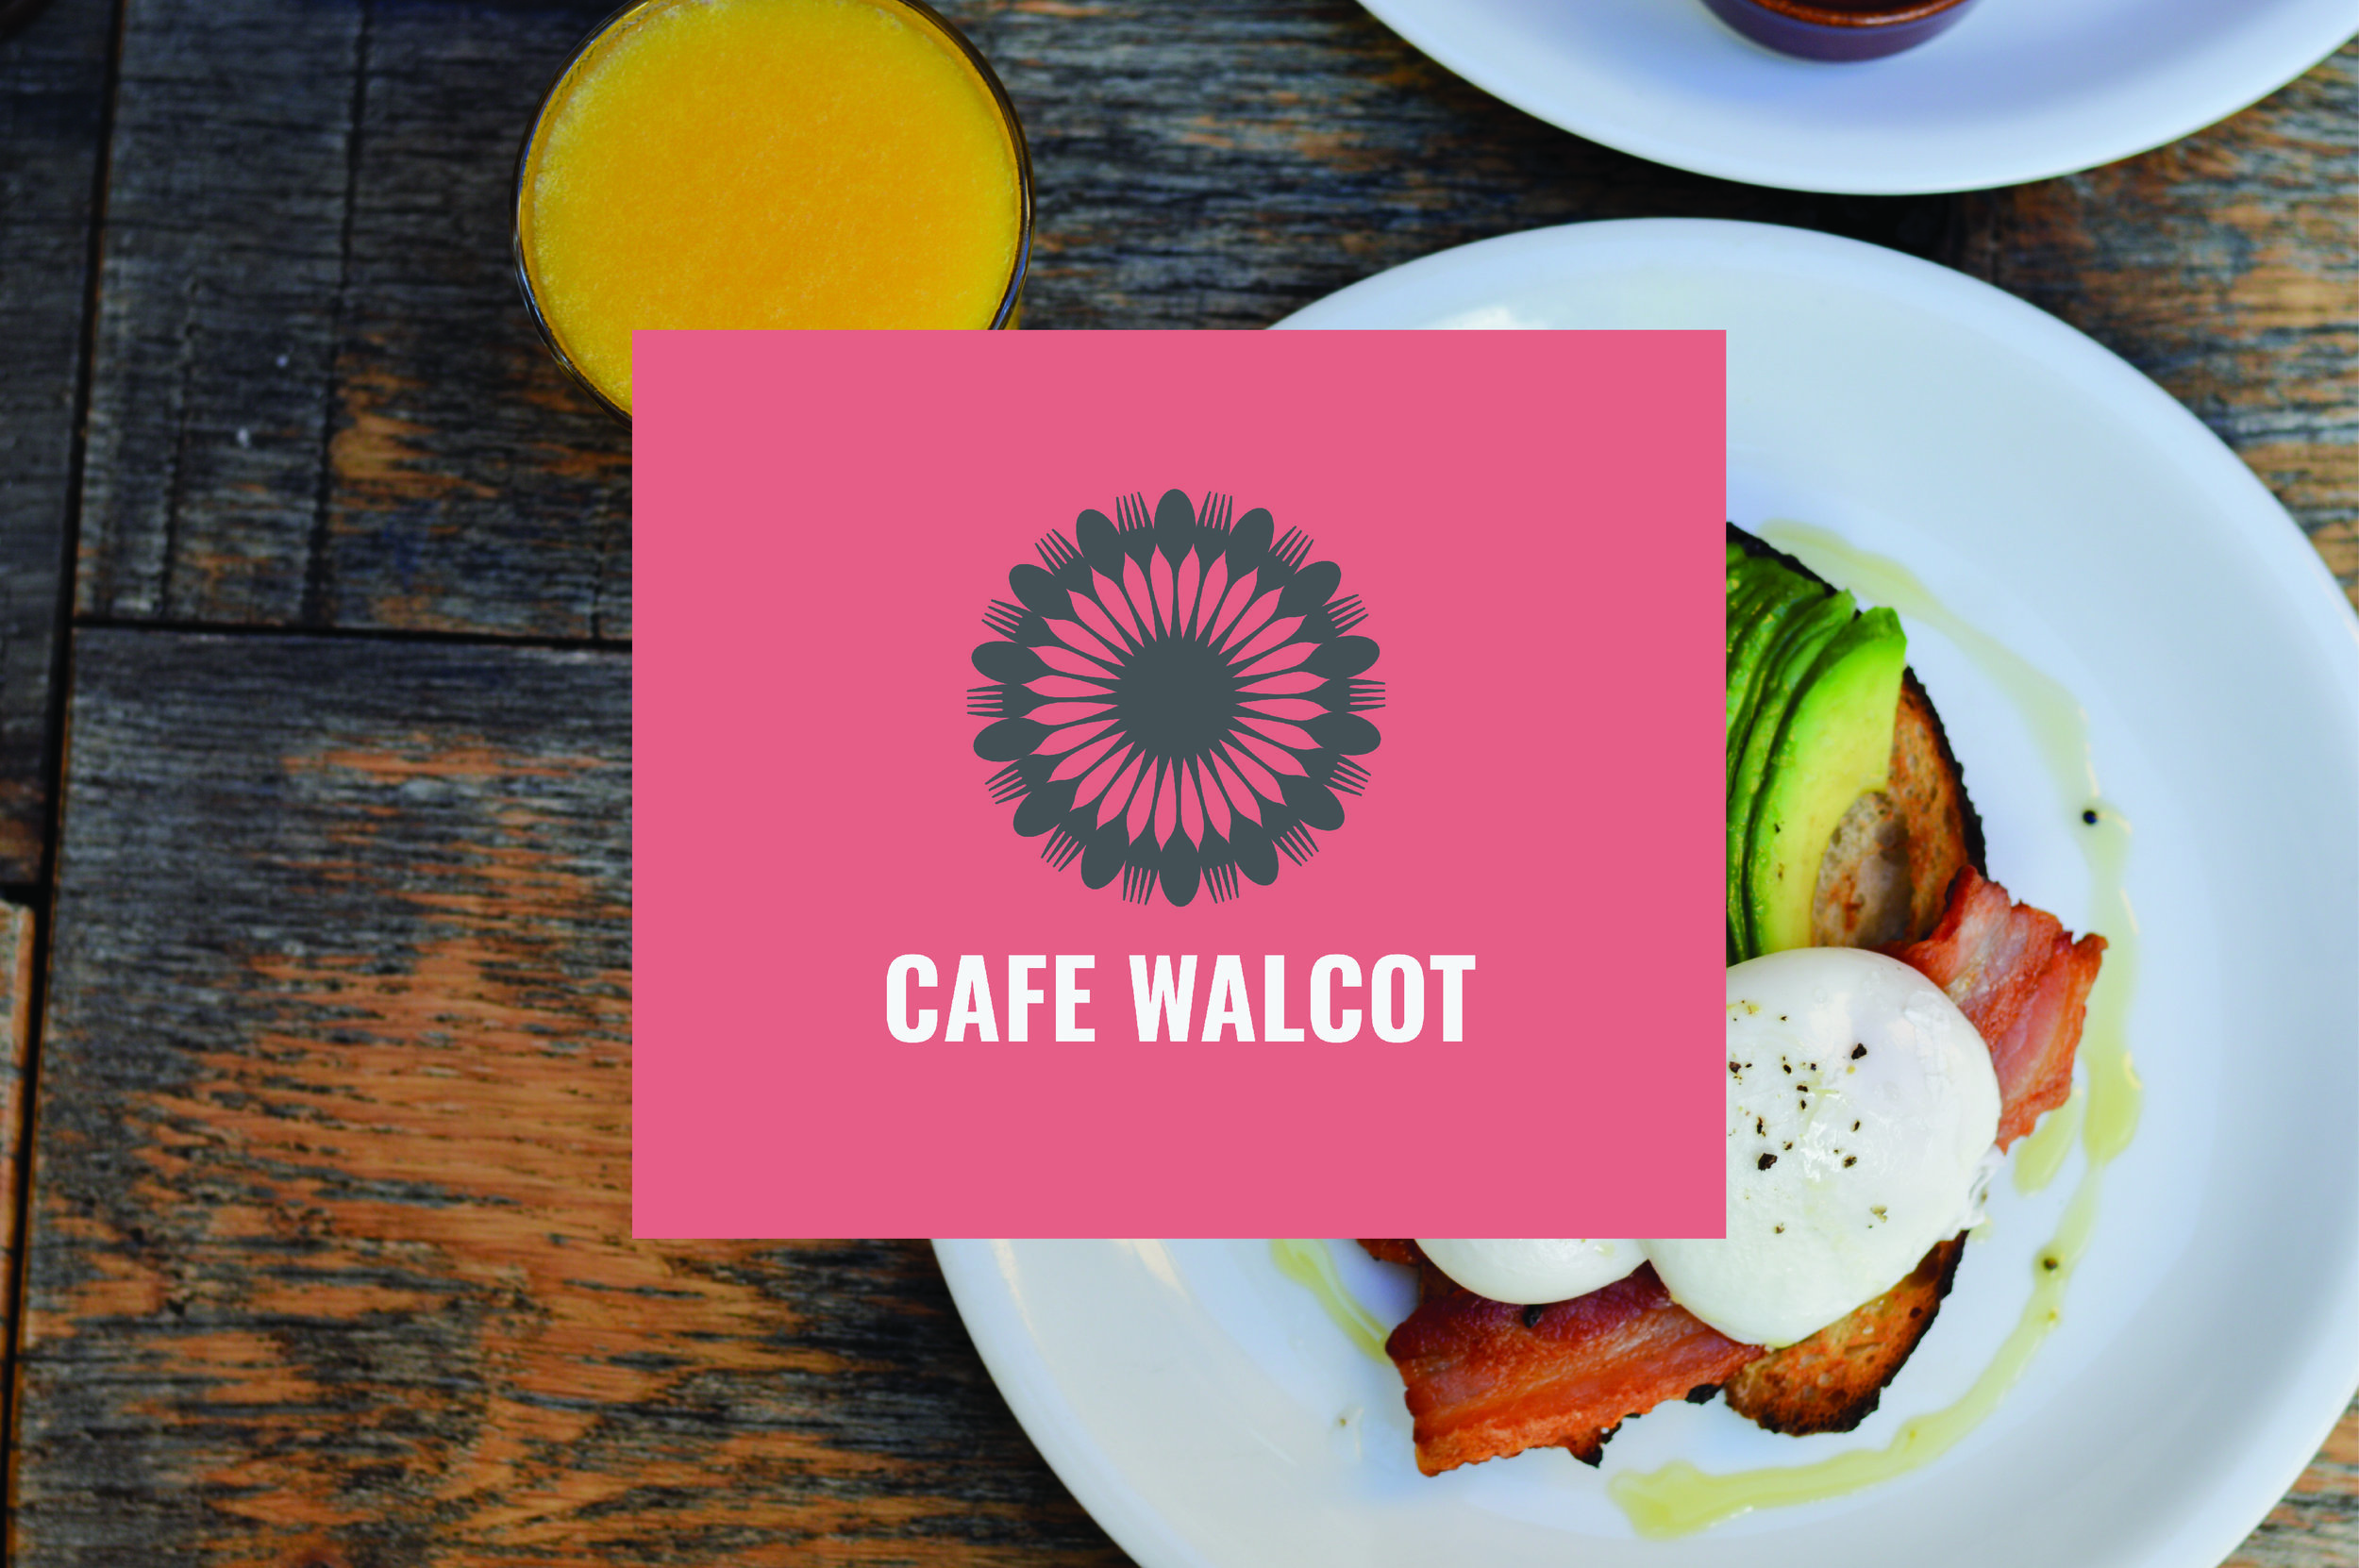 Walcot Cafe